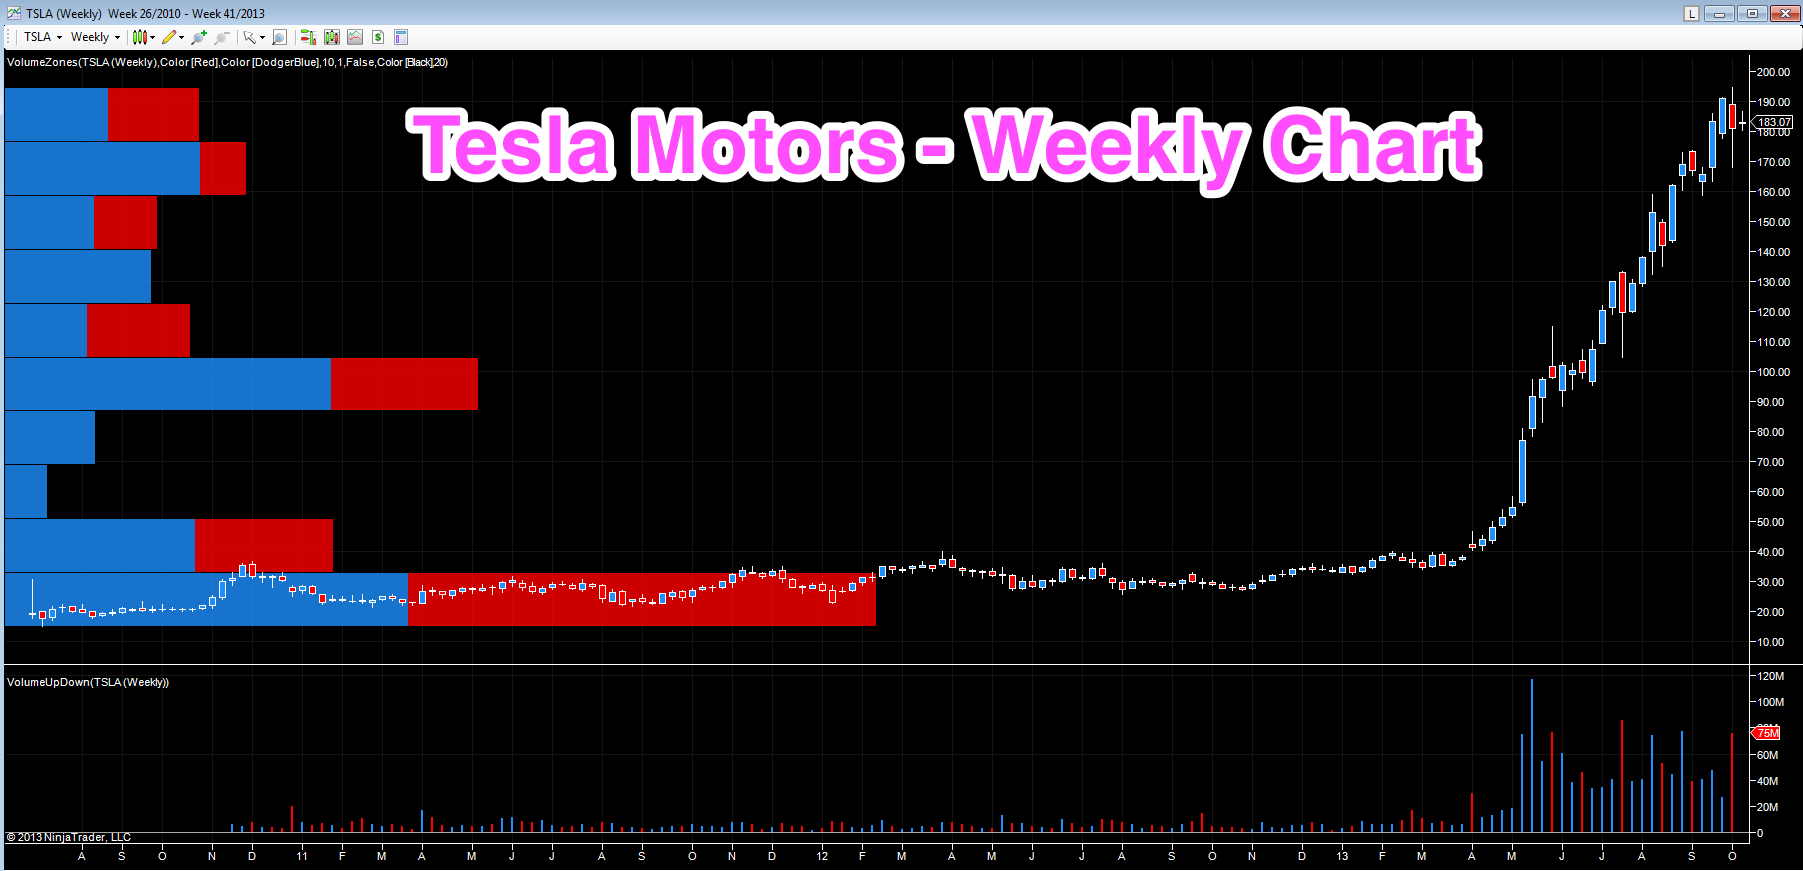 Tesla – stock price on the weekly chart